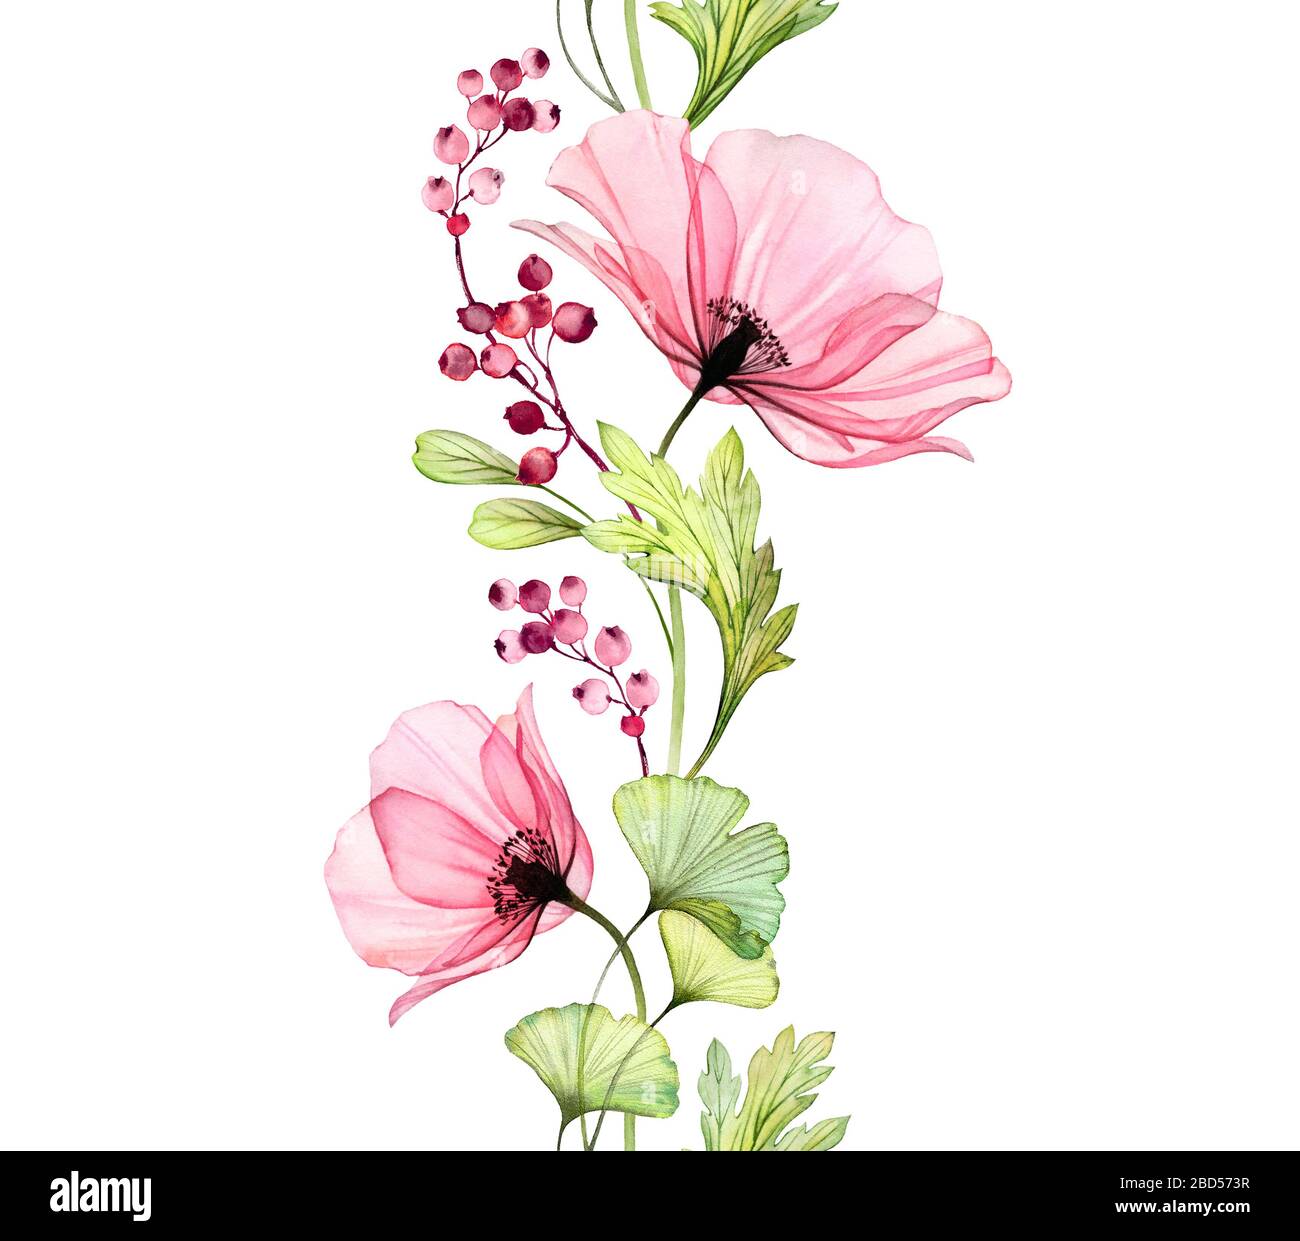 Wasserfarbe Poppy nahtloser Rand. Vertikales sich wiederholendes Muster. Große rosafarbene Blume mit Blättern und Beeren isoliert auf Weiß. Botanische Illustration für Stockfoto